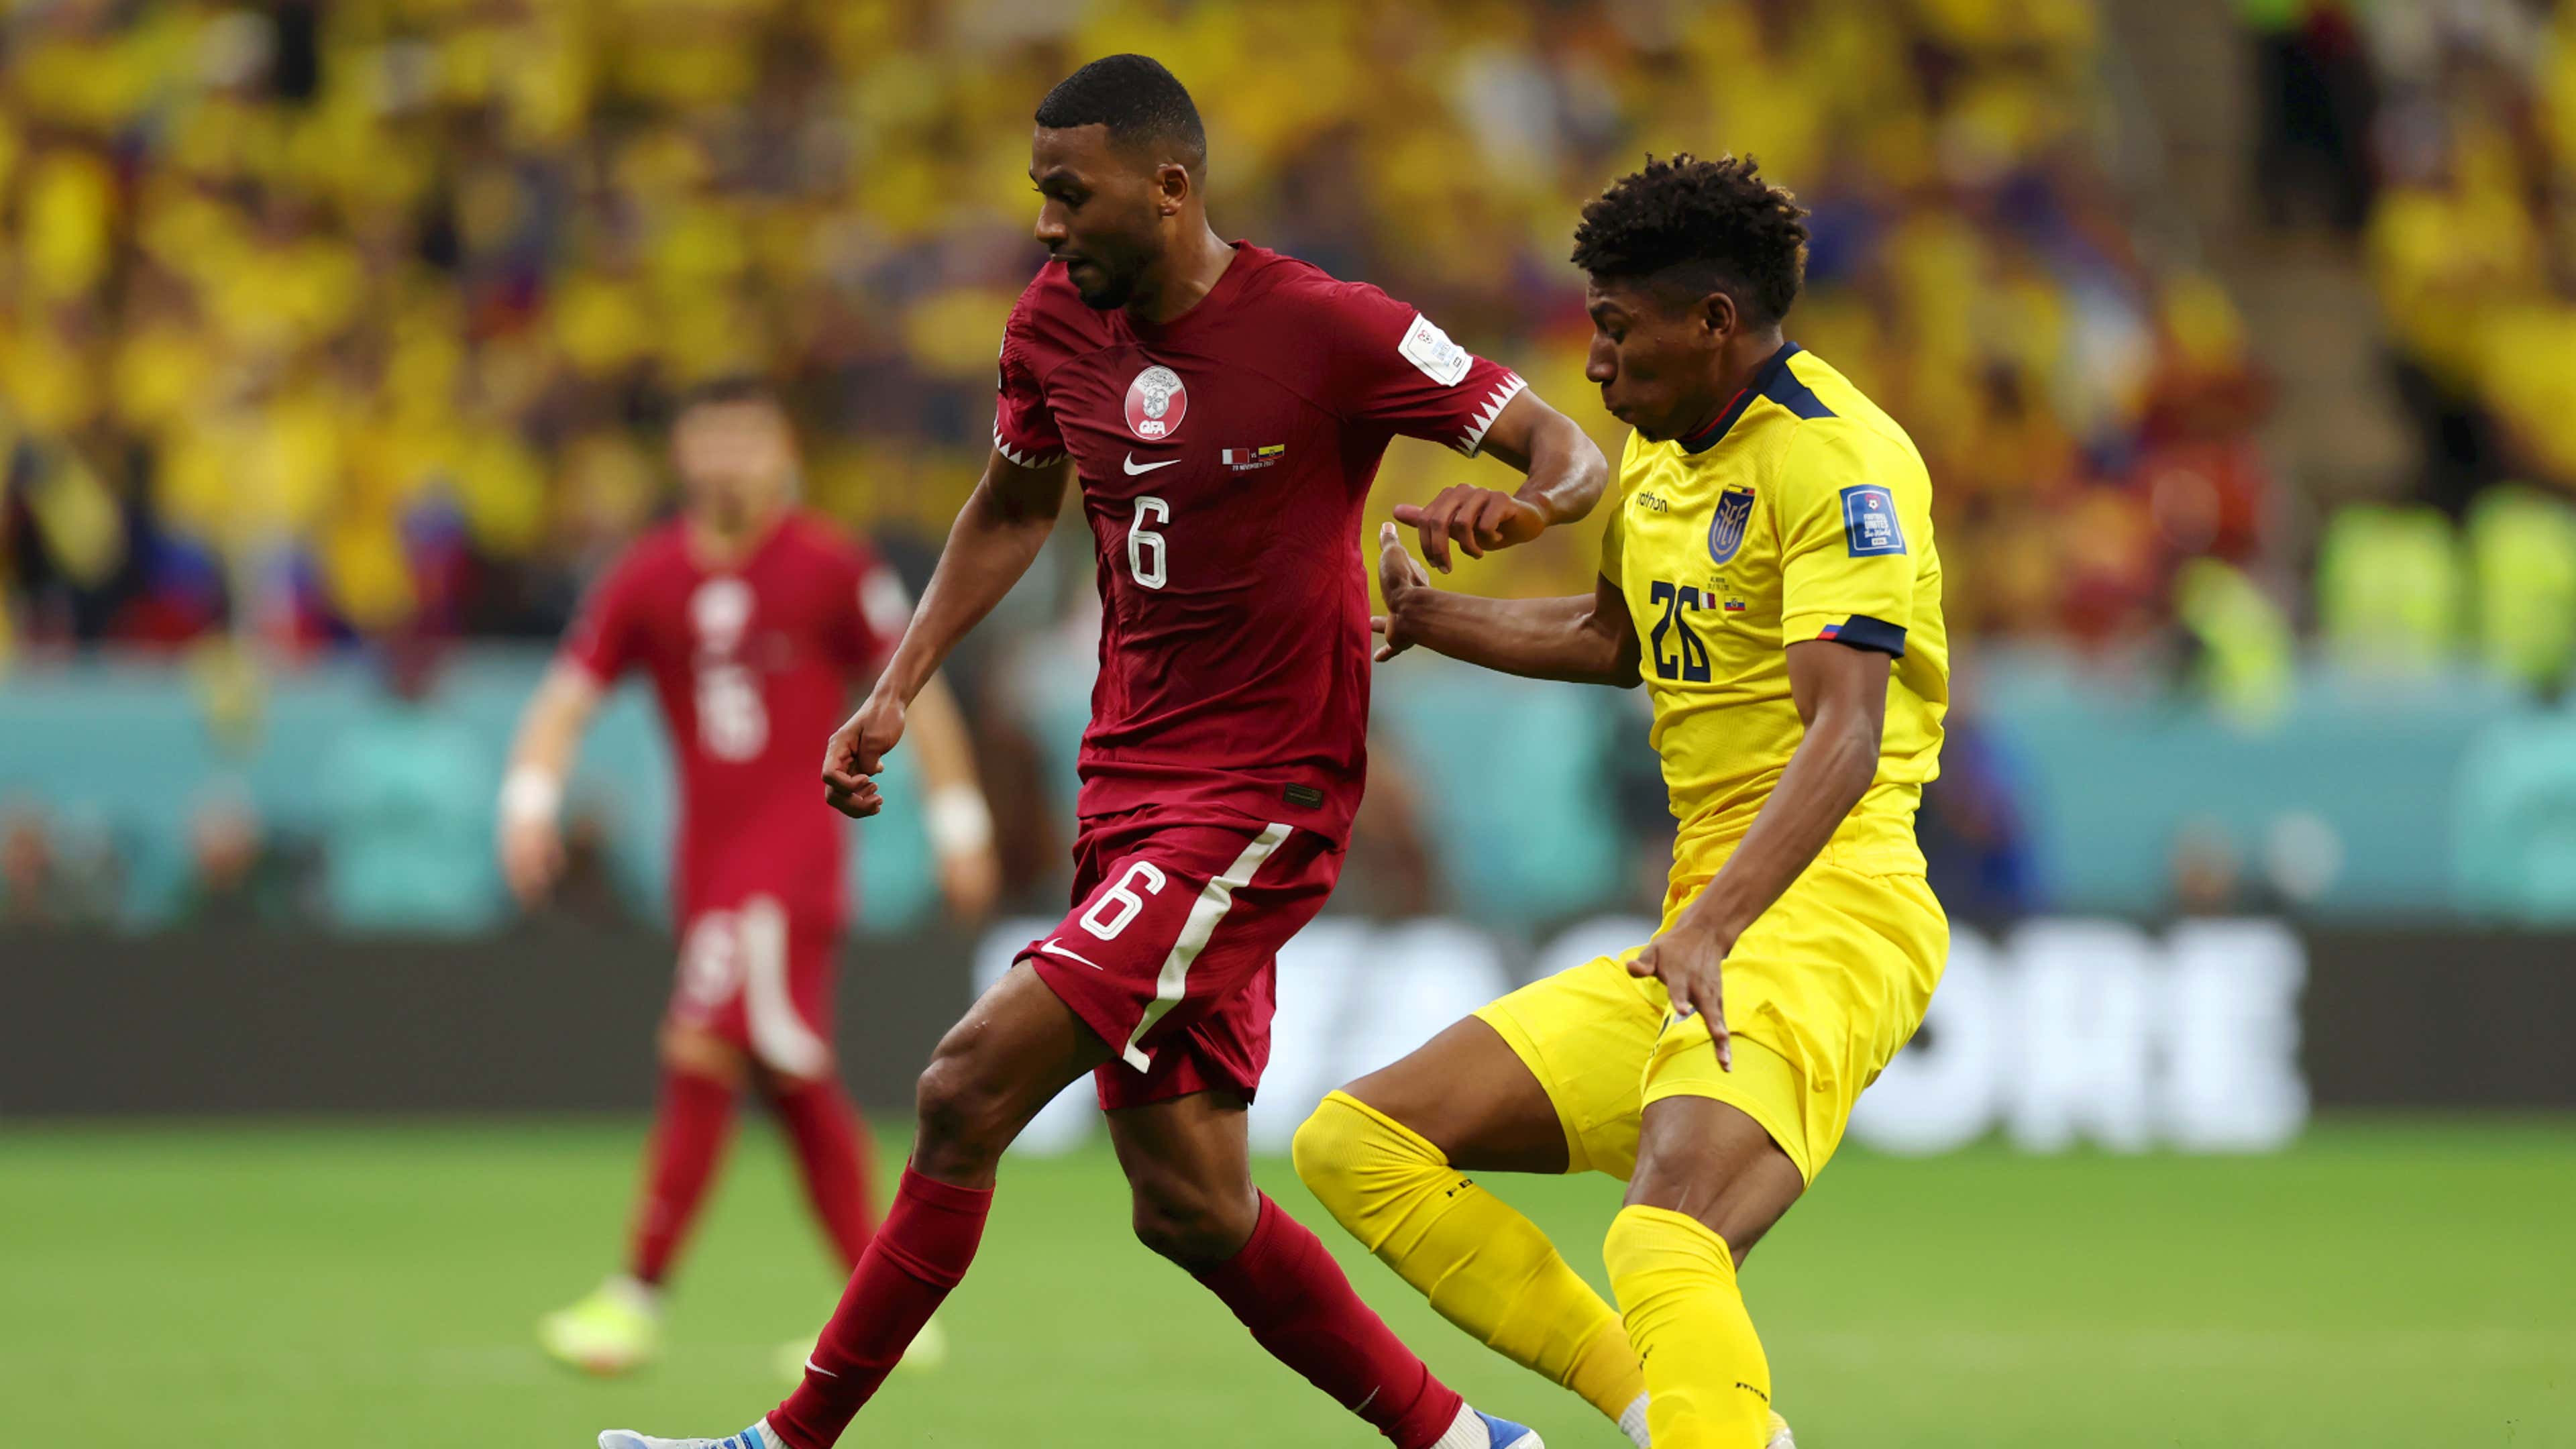 Equador 2-0 Qatar (20 de nov, 2022) Placar Final - ESPN (BR)